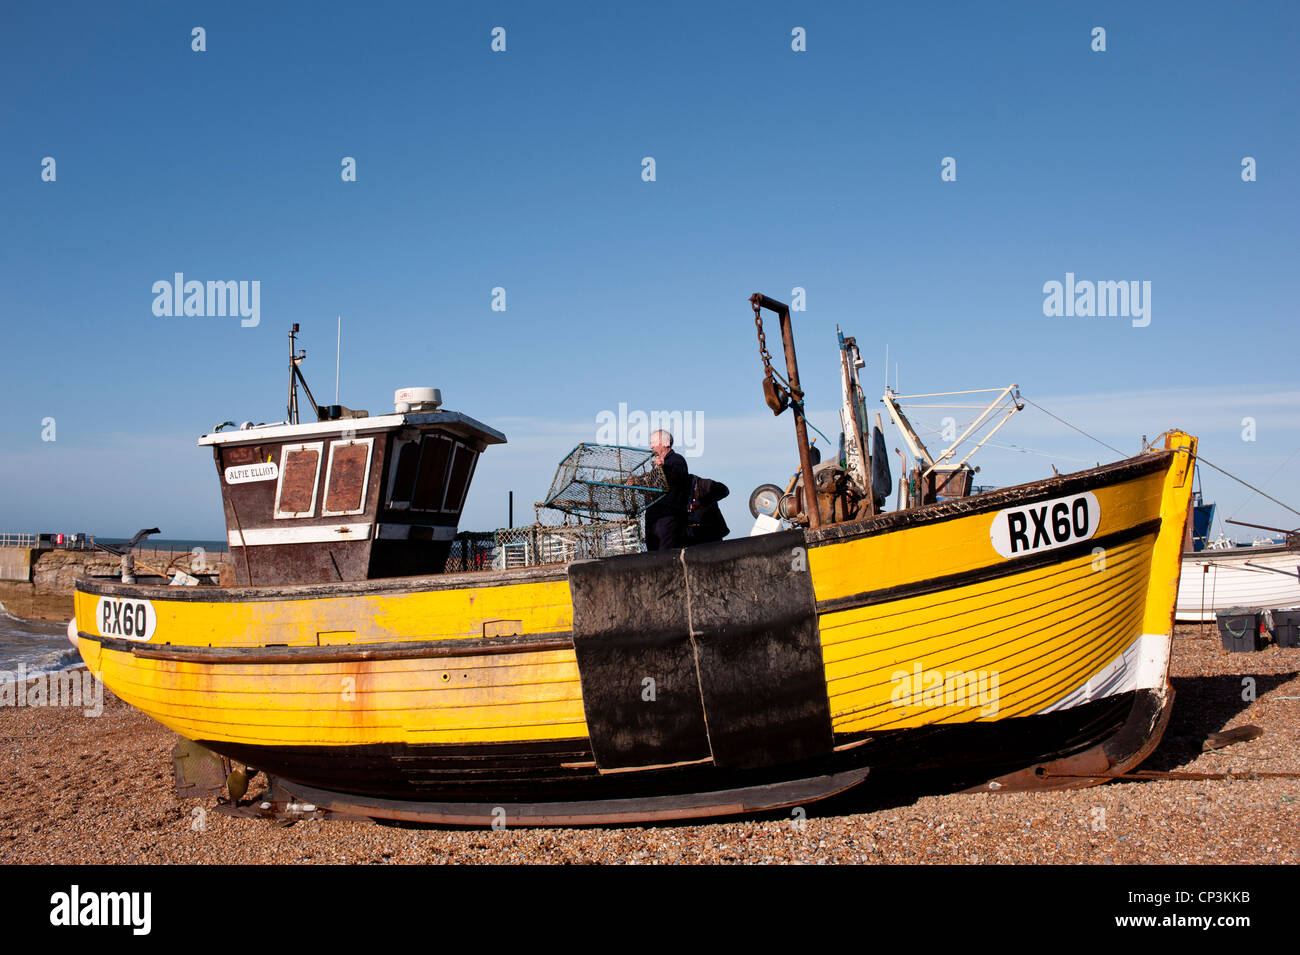 HASTINGS, EAST SUSSEX, UK - 30 APRILE 2012: Imbarcazione da pesca sulla spiaggia di Hastings Foto Stock